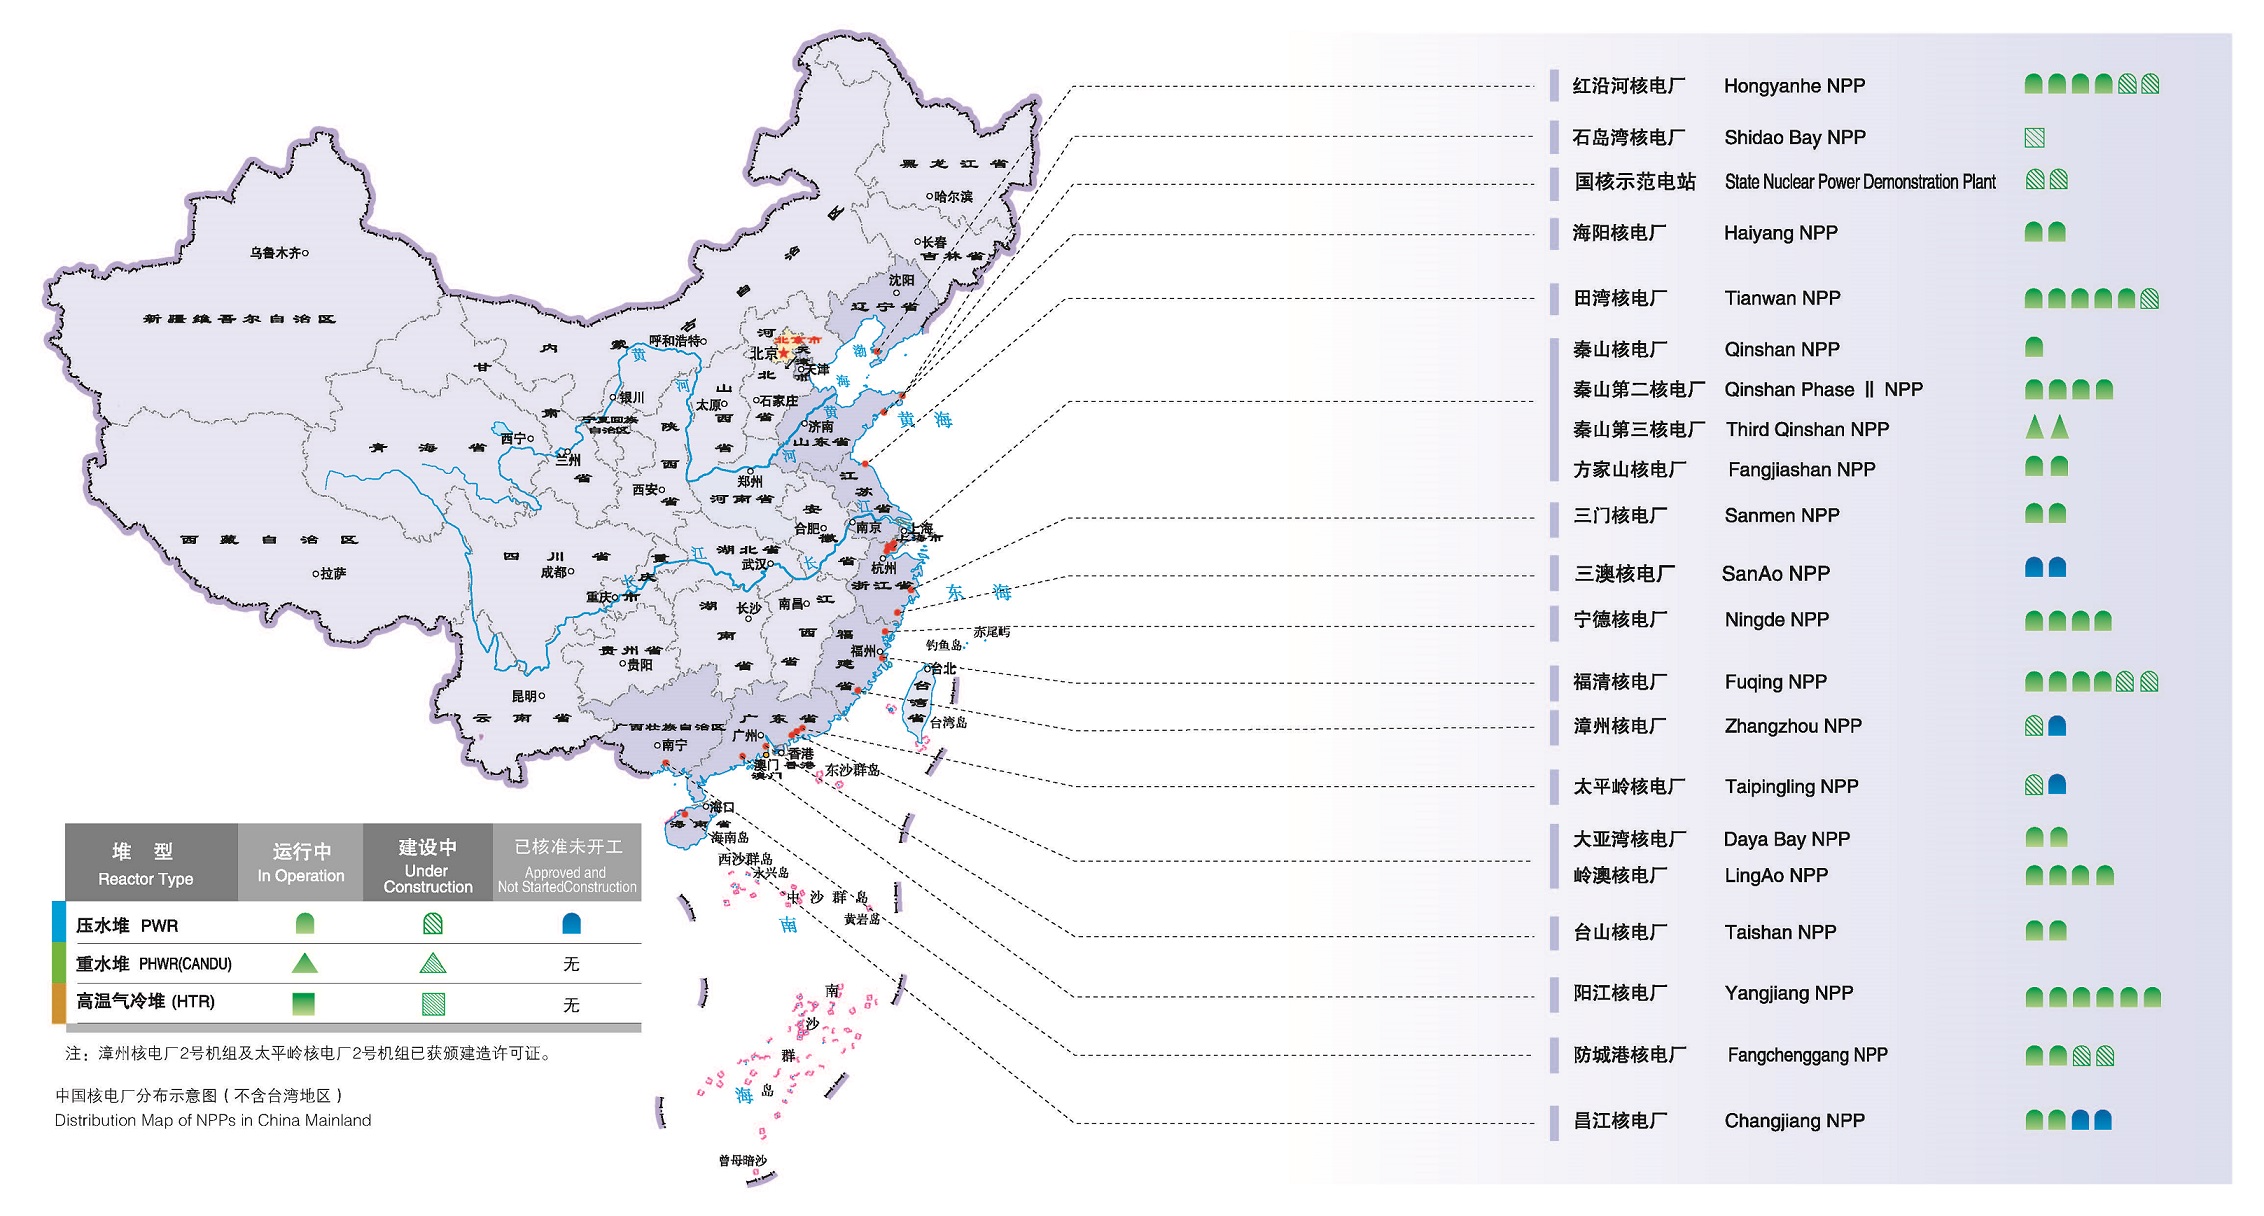 中国核电厂分布示意图（截至2020年9月）-.jpg